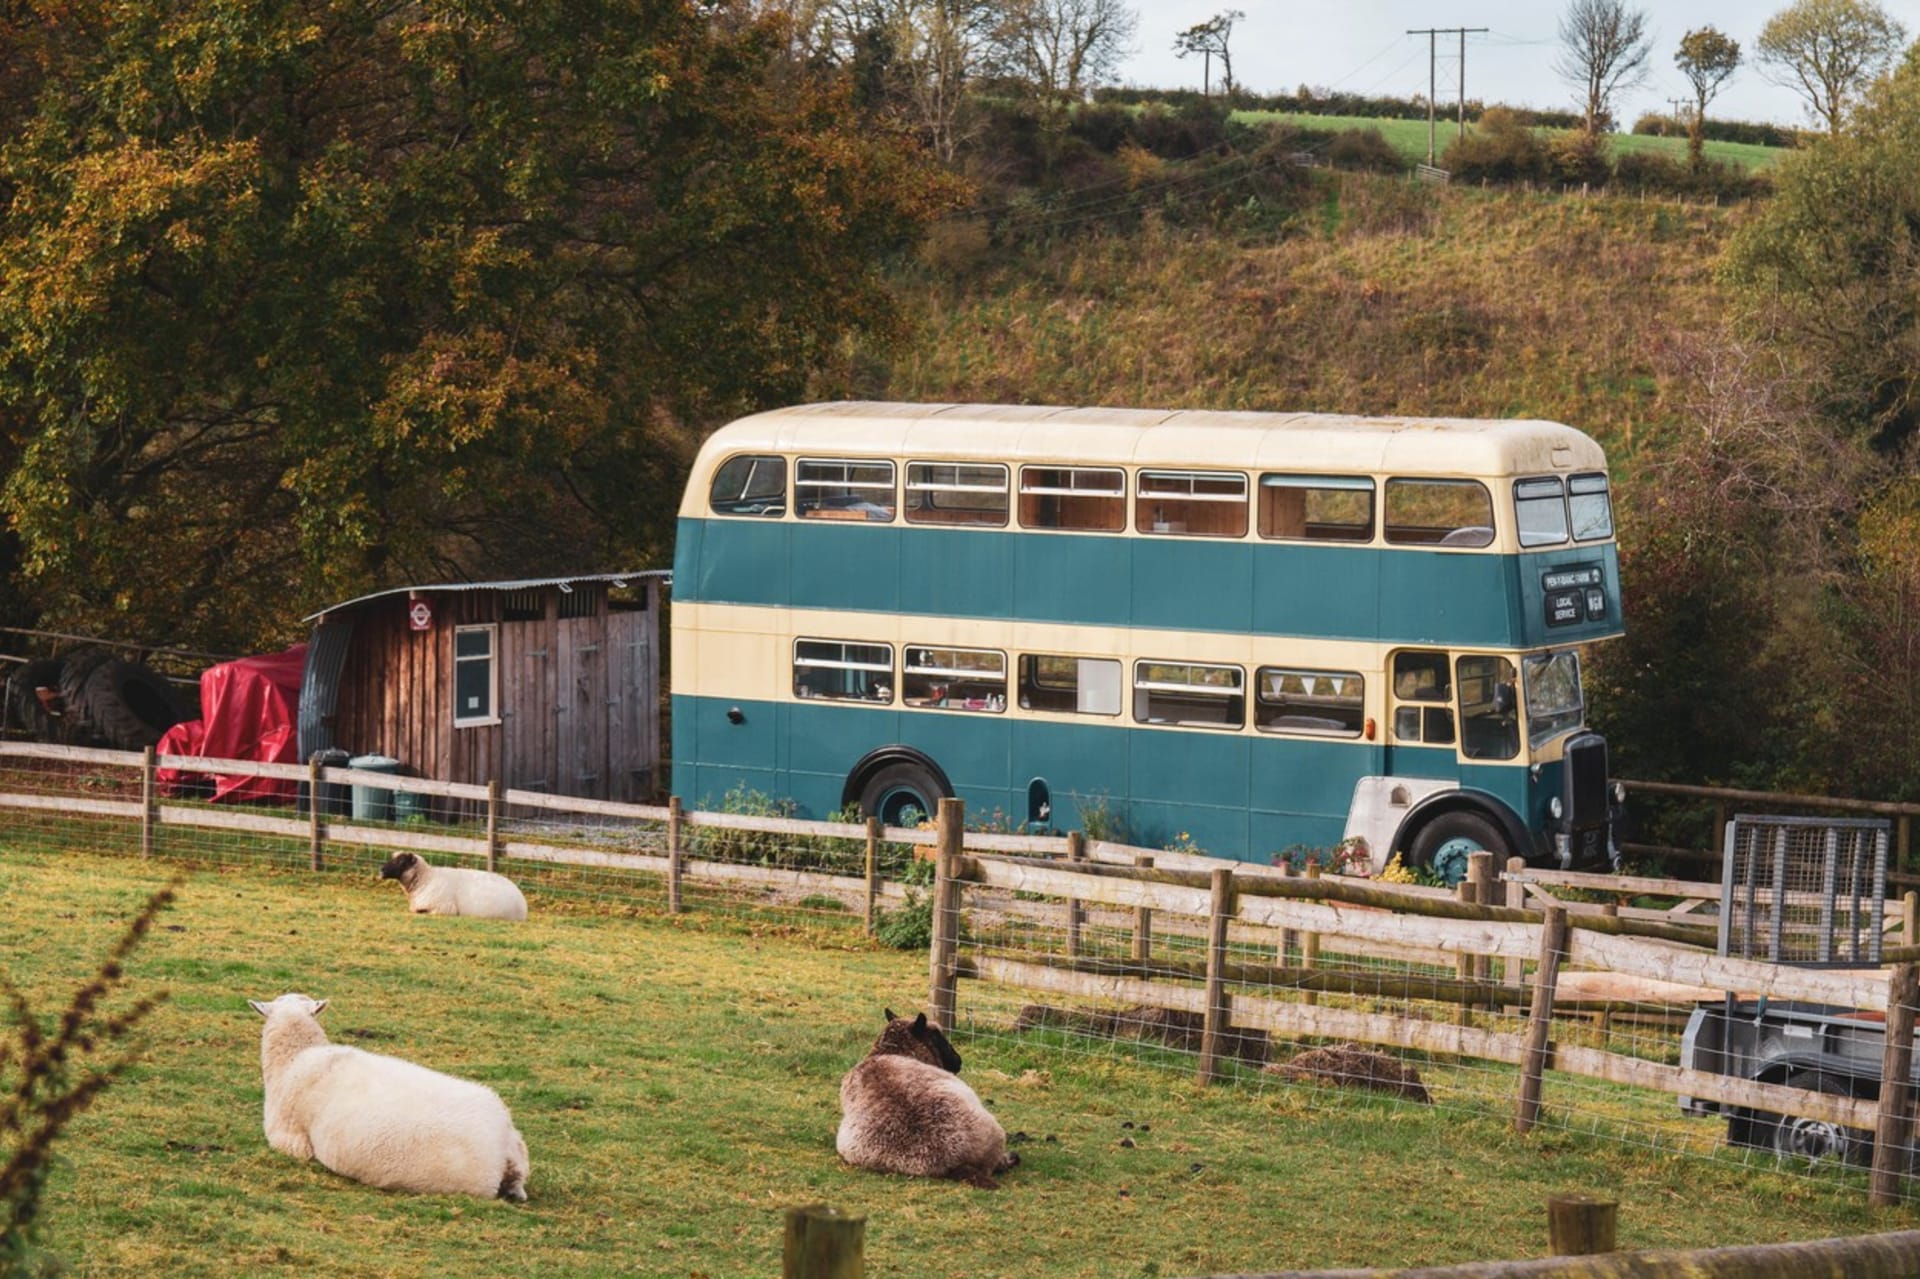 Originální ubytování nabízí renovovaný dvoupatrový autobus trvale zaparkovaný ve Walesu. Uvnitř návštěvníci najdou překvapivě prostorný interiér s obývacím prostorem a kuchyní v přízemí. 